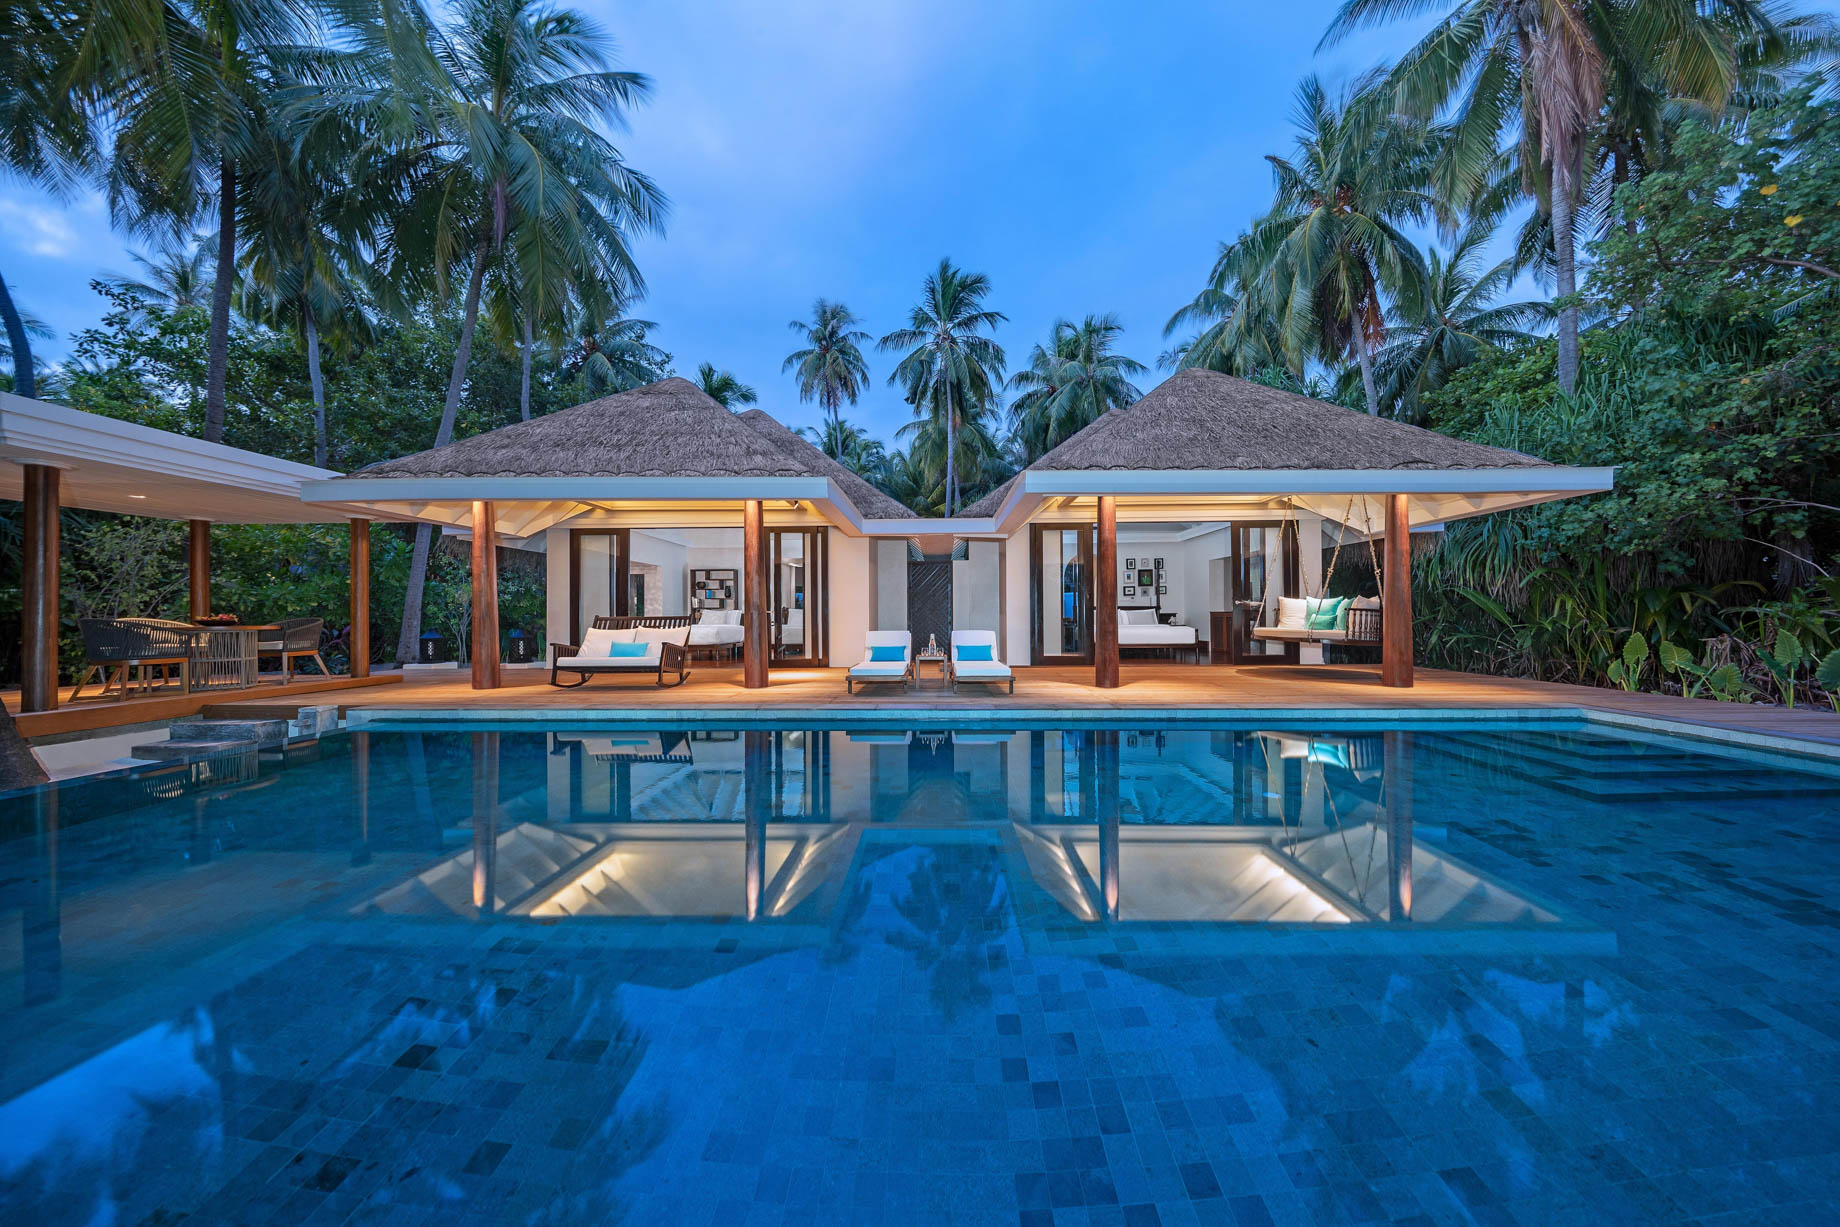 Anantara Kihavah Maldives Villas Resort - Baa Atoll, Maldives - Two Bedroom Beach Pool Residence Exterior Night View